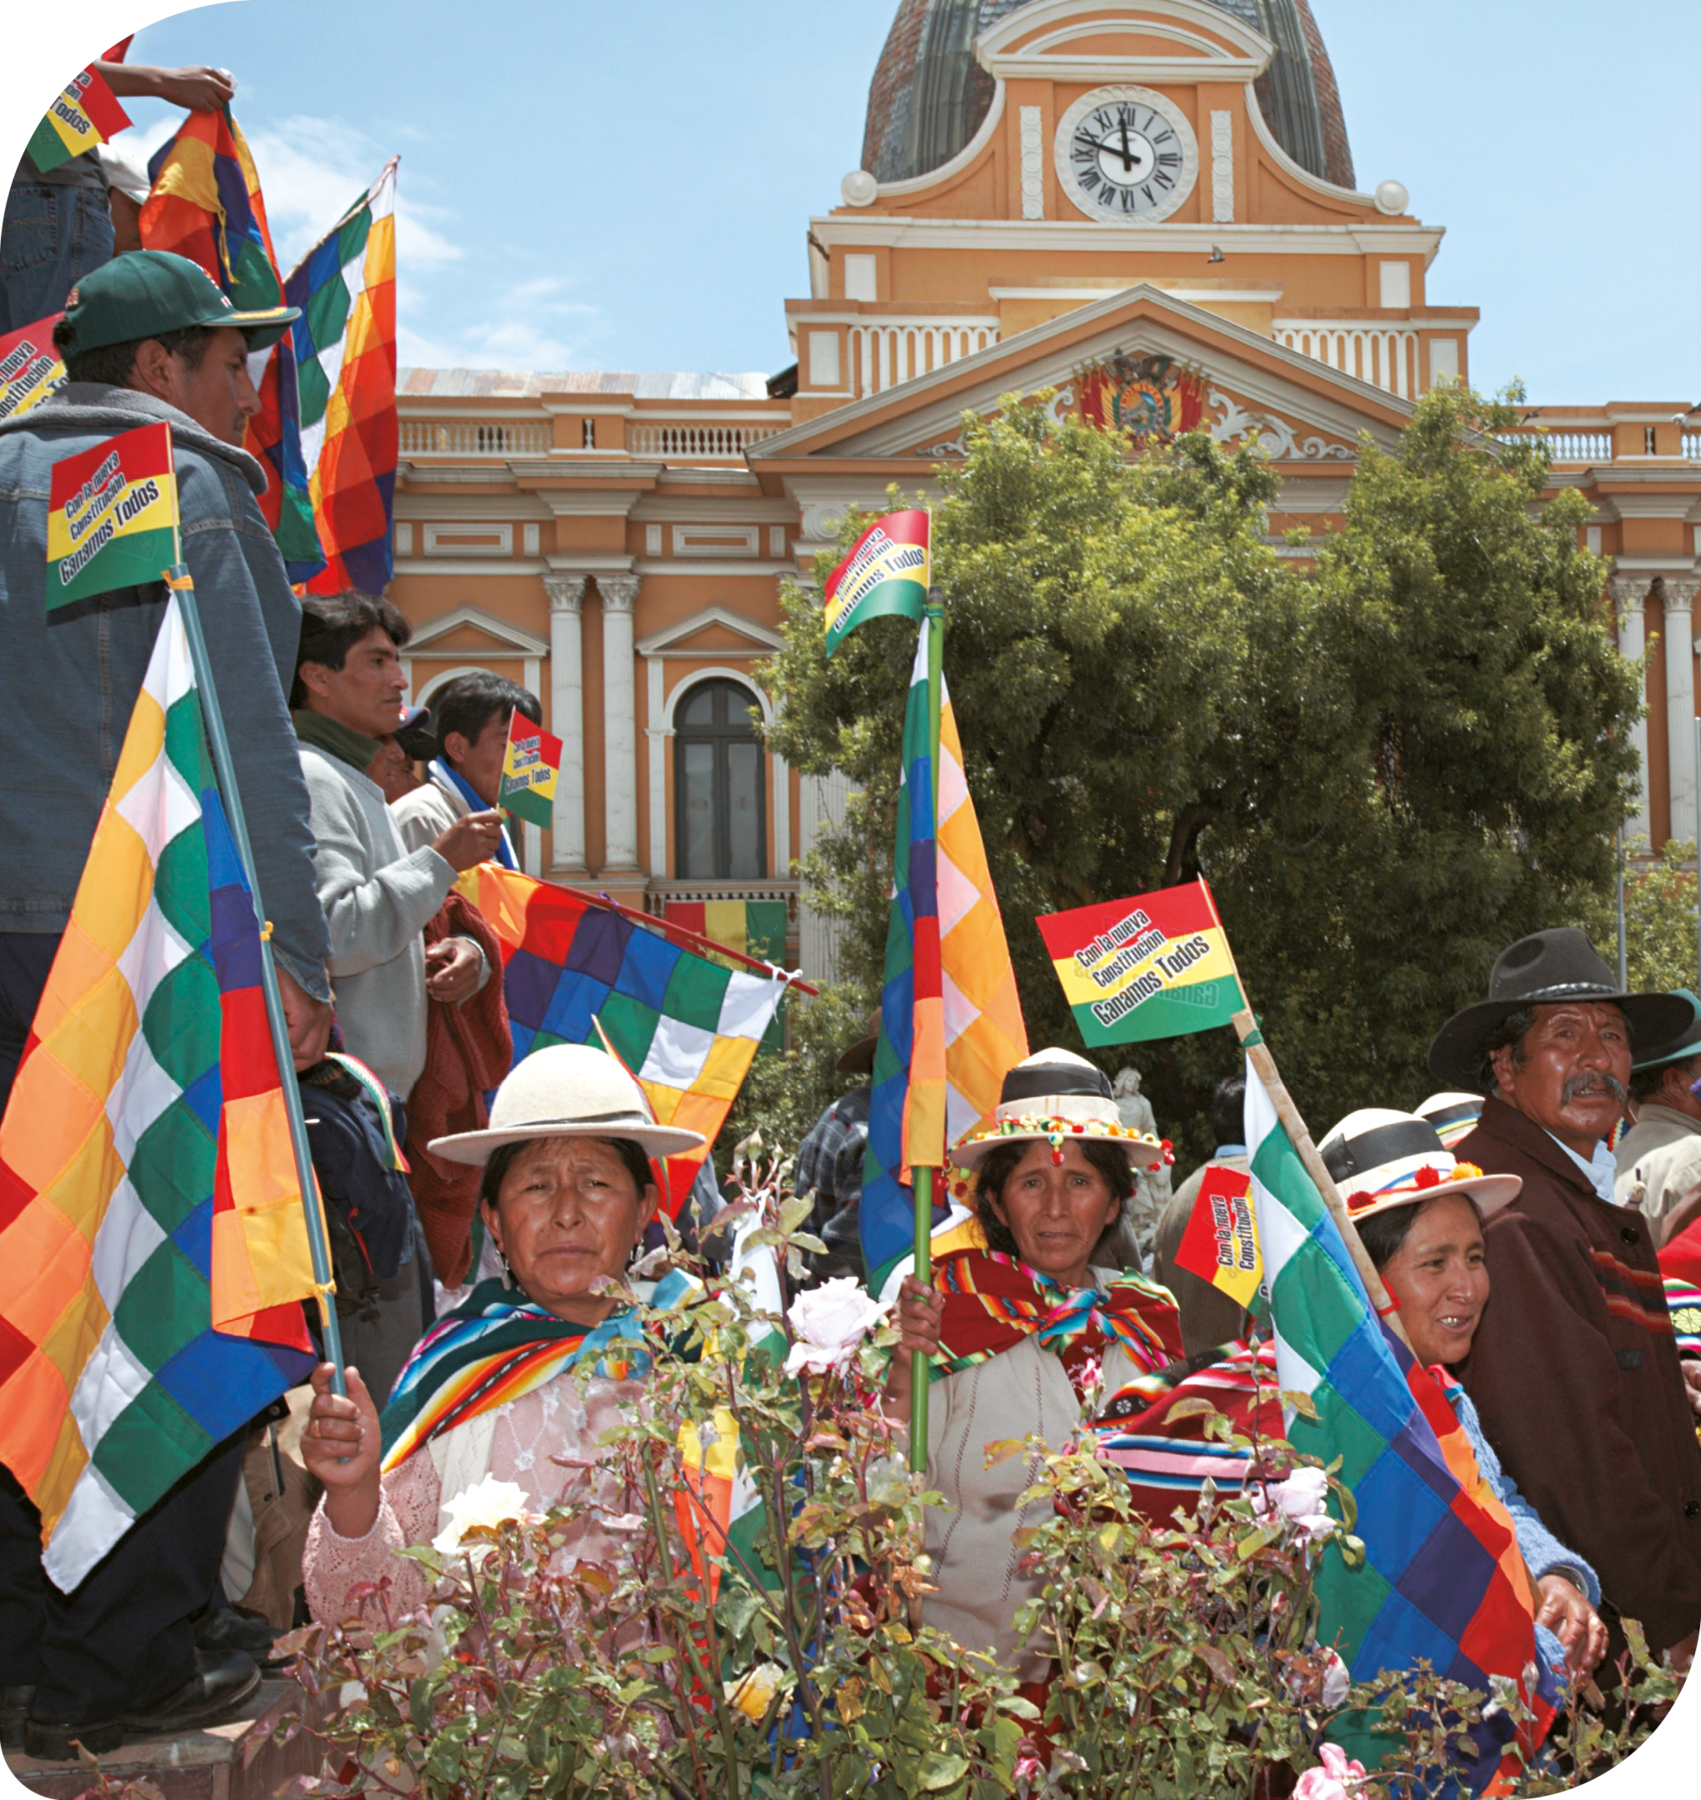 Fotografia. Ao centro, três mulheres usando chapéu, camisa e poncho colorido, estão segurando bandeiras com quadrados coloridos com as mãos. Ao redor, pessoas segurando bandeiras coloridas. Elas estão de pé em uma rua. Atrás, uma construção com muitas janelas.